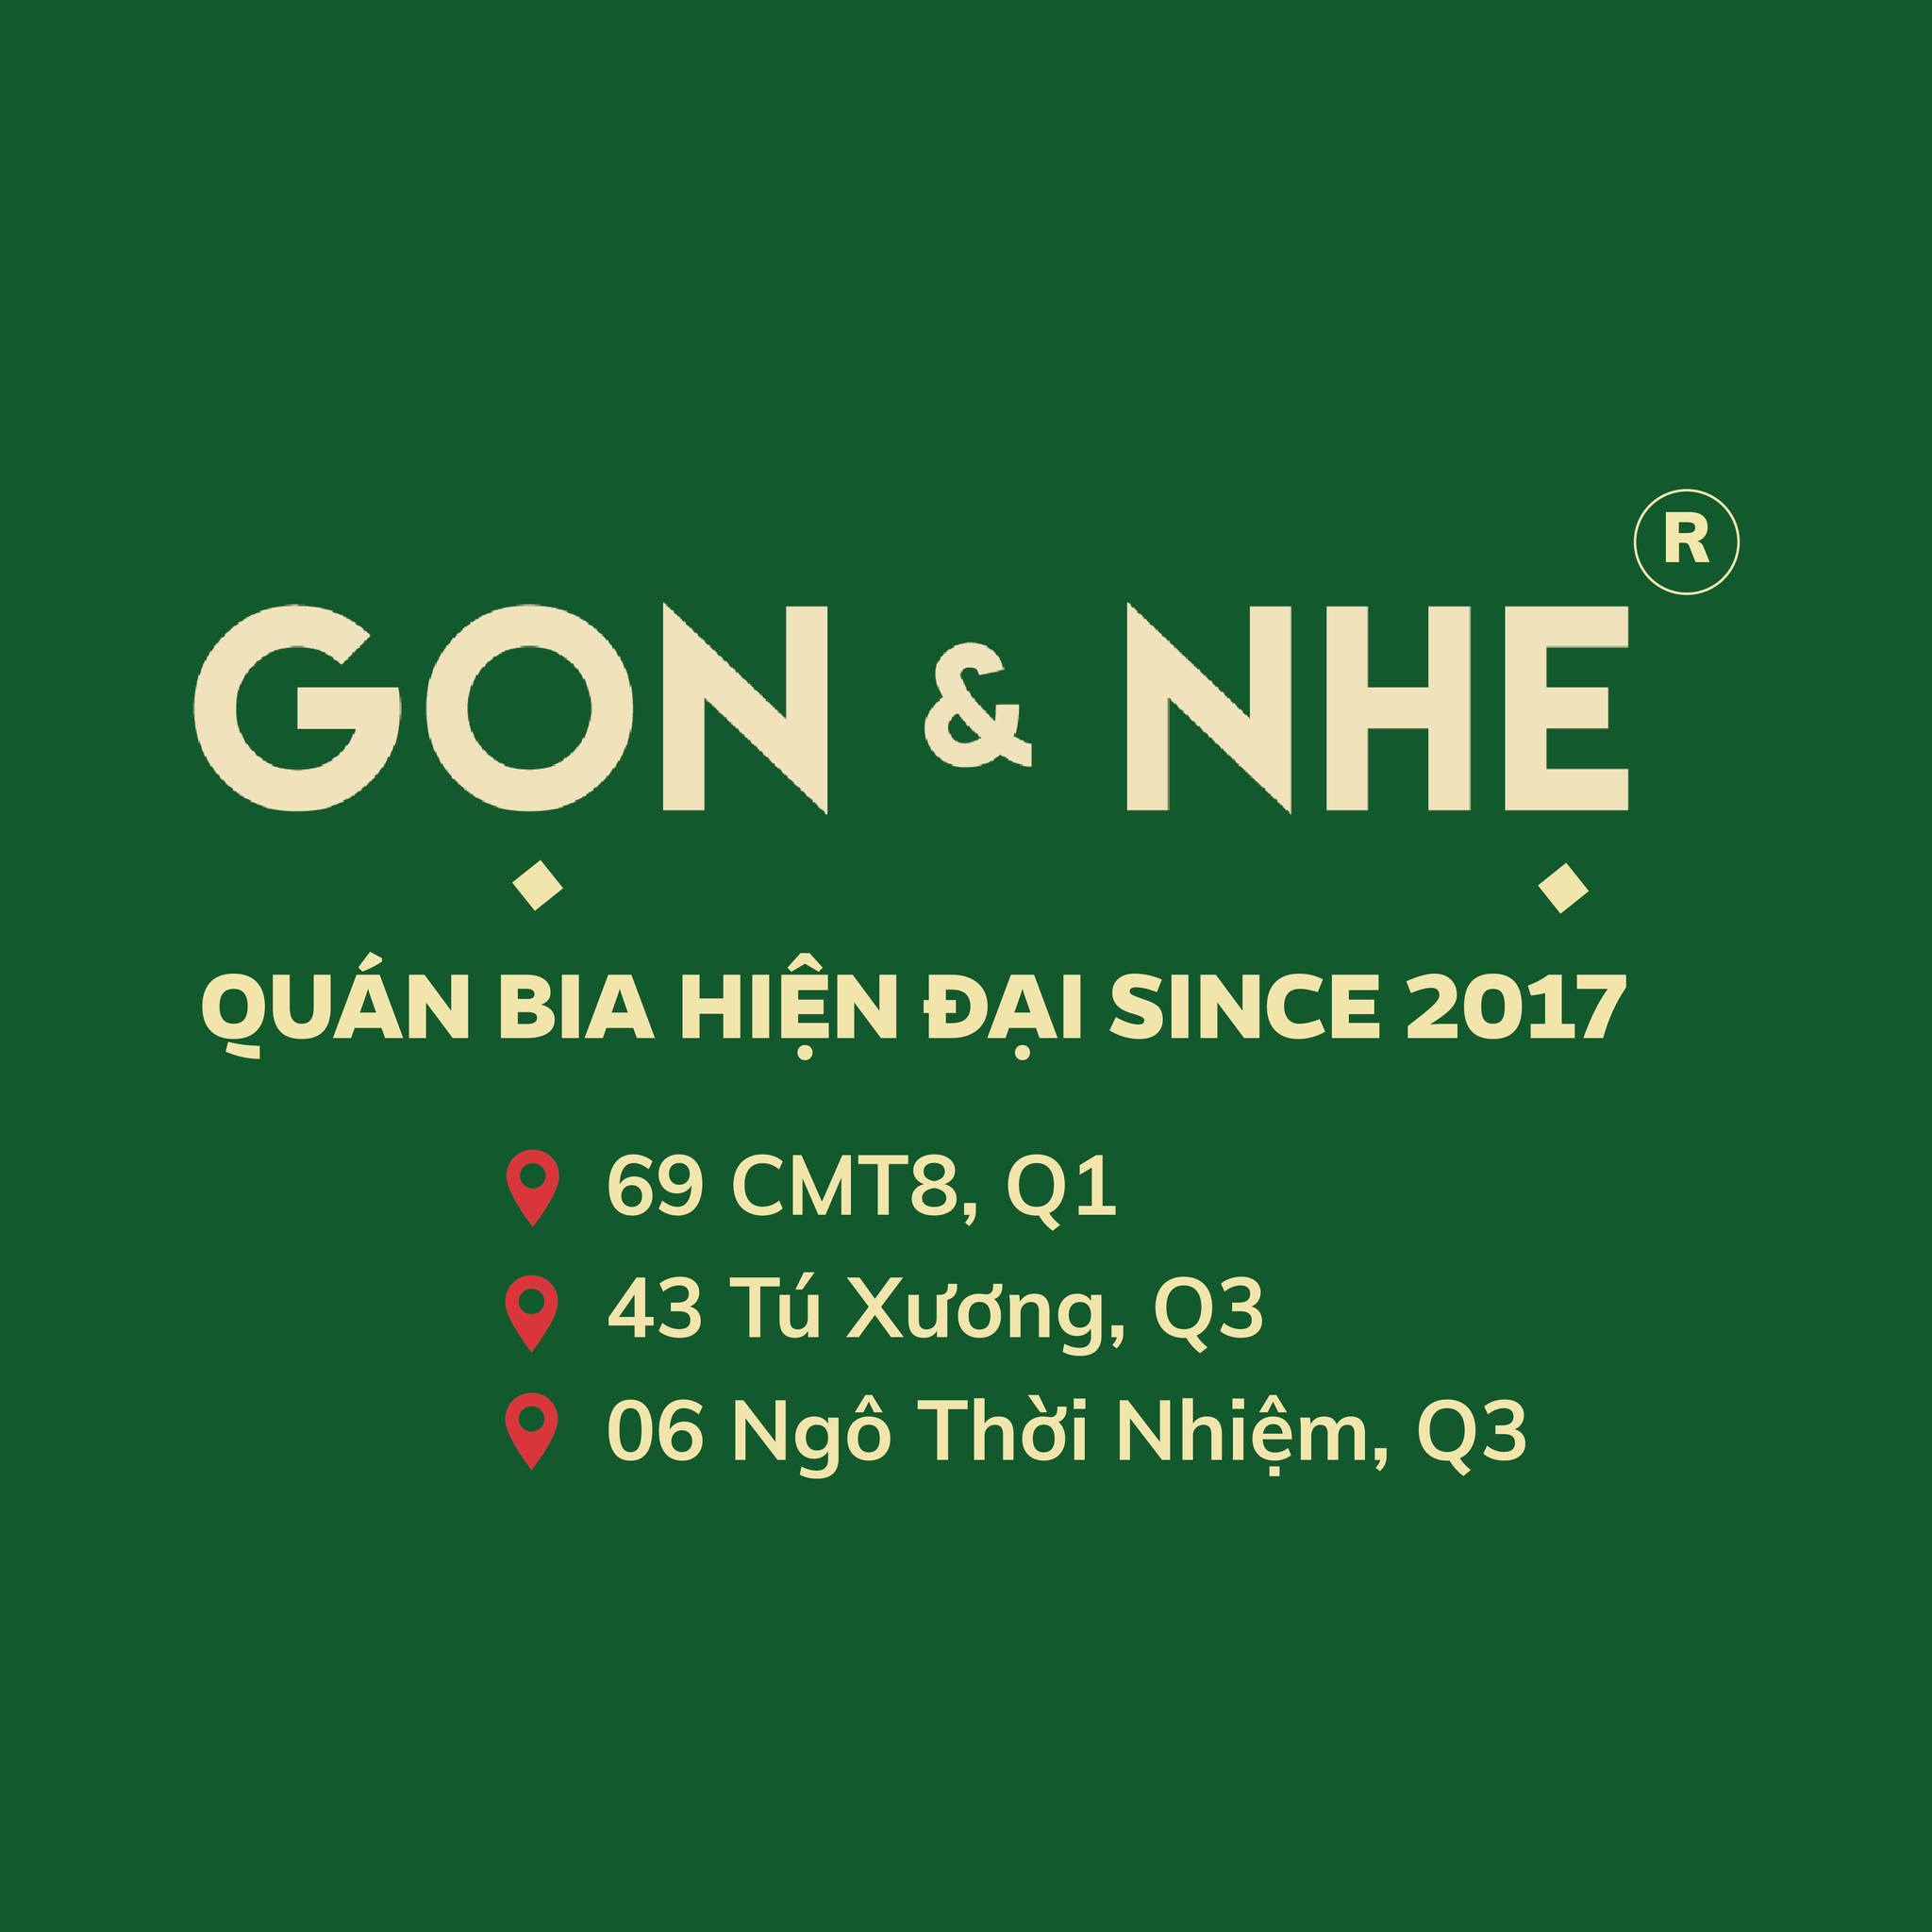 Top 40 danh sách các món ngon ngày Tết Việt Nam 3 miền (phần 2)